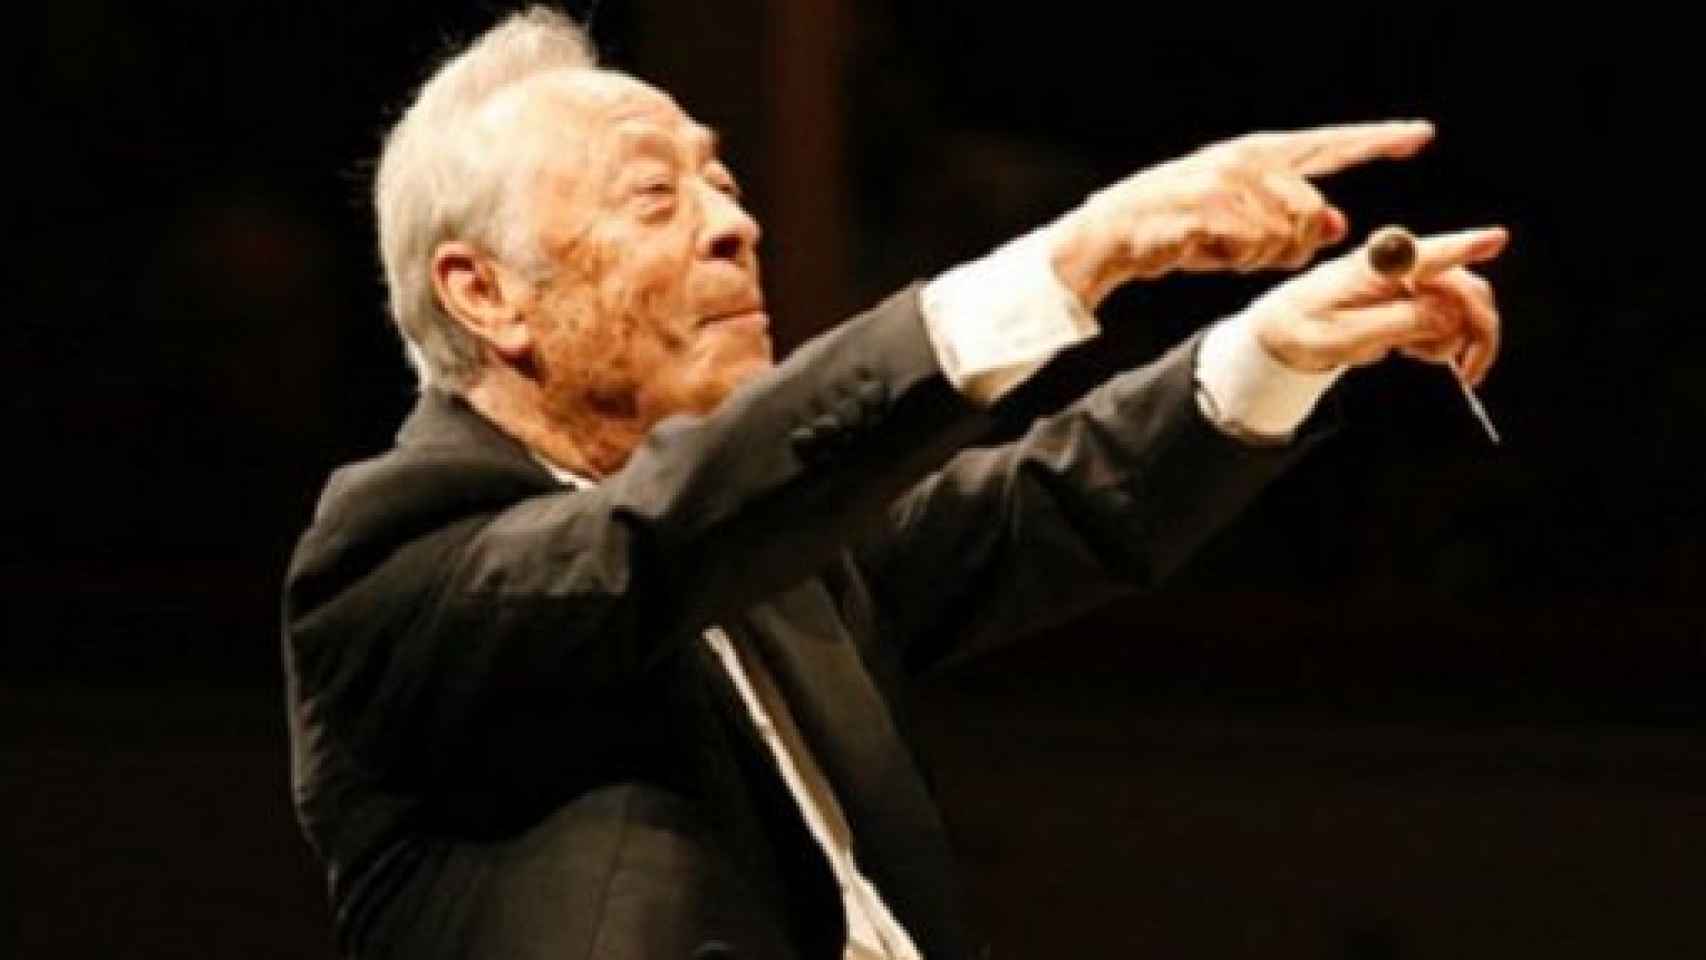 Image: Muere el musicólogo y director de orquesta Alberto Zedda